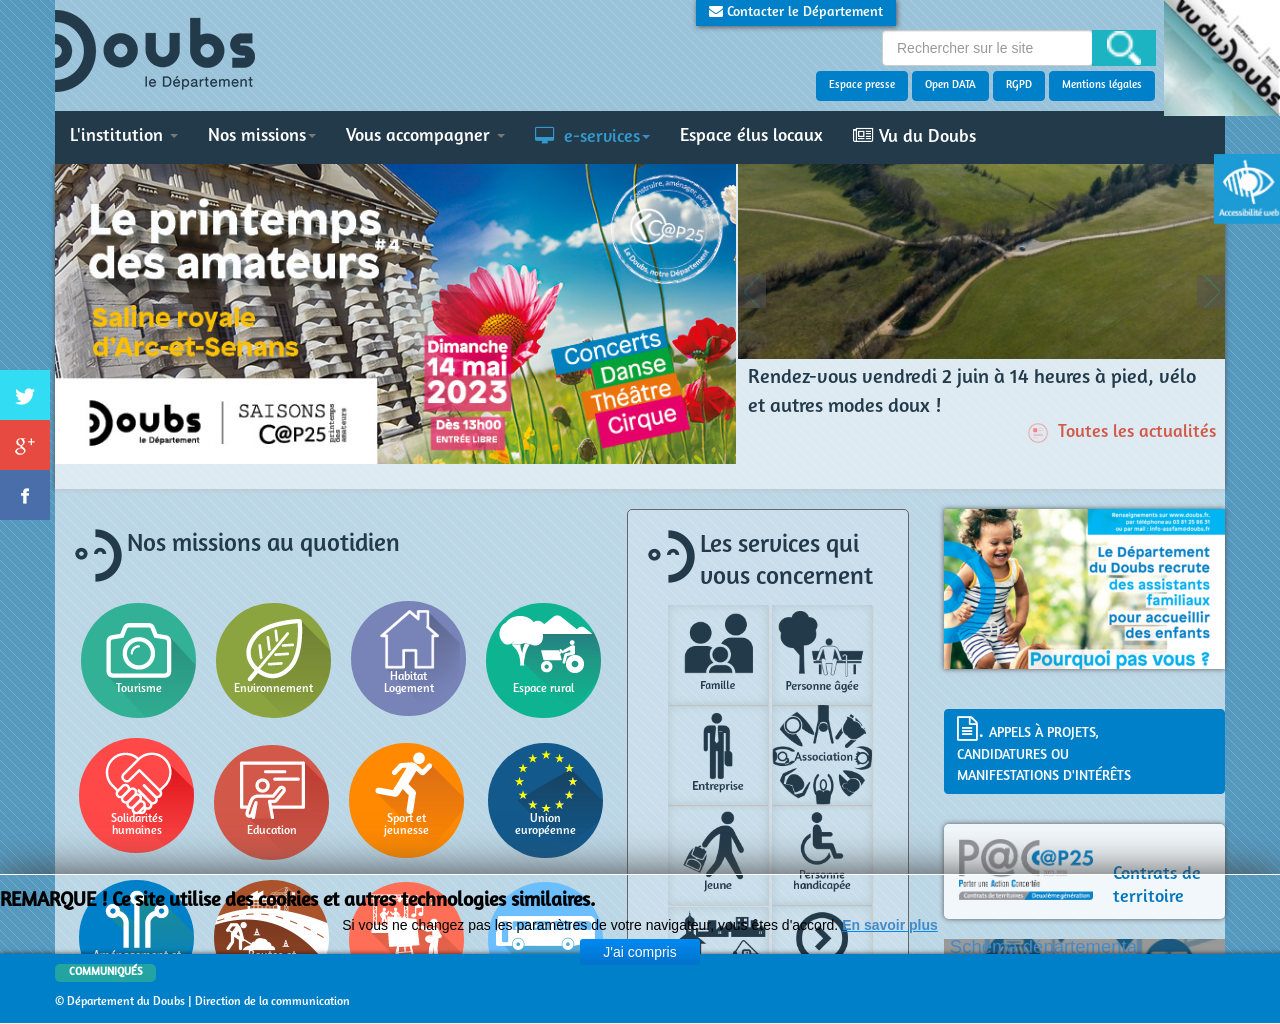 www.doubs.fr